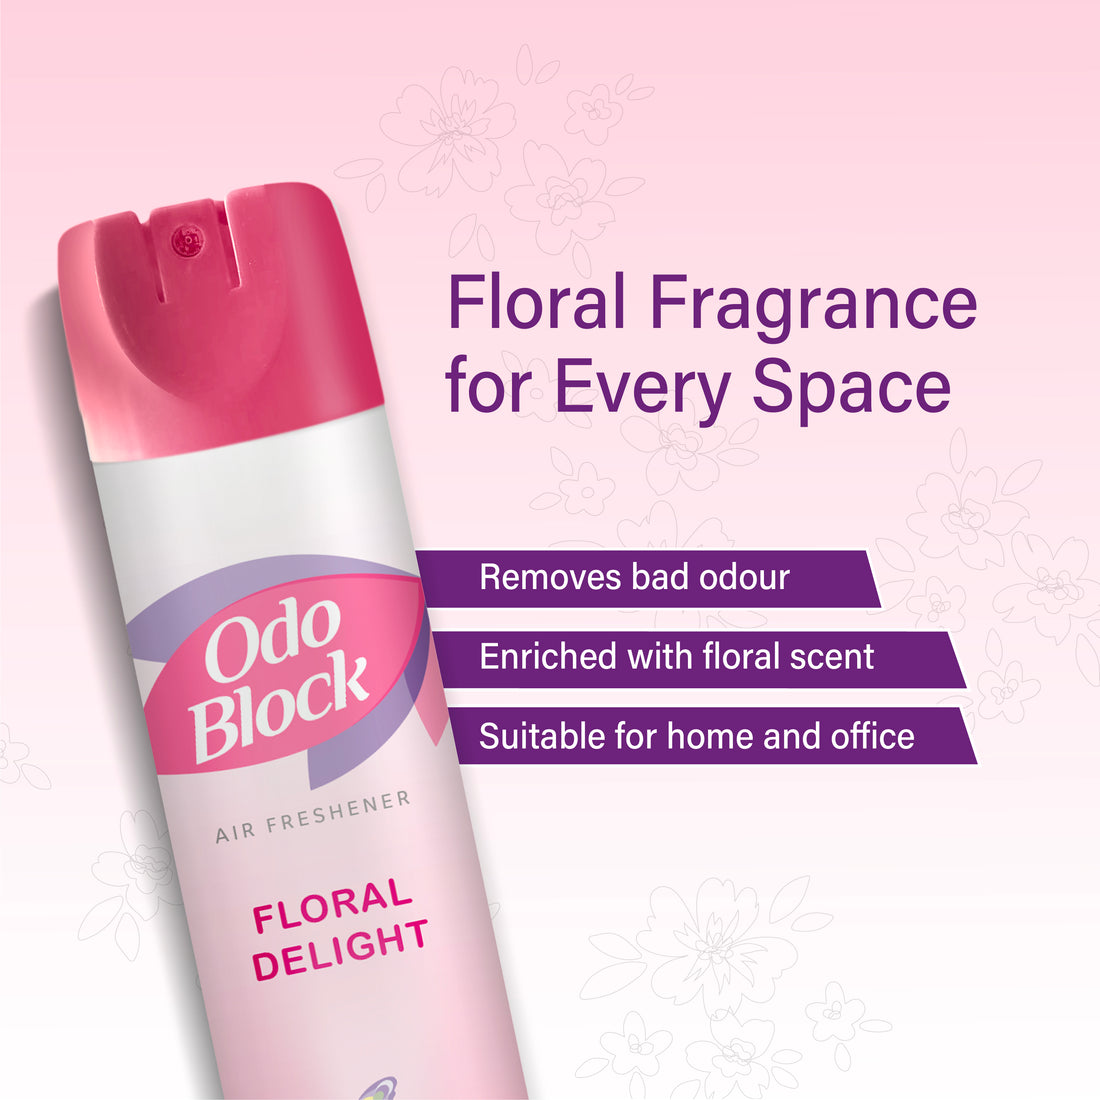 Odo Block Air Freshener (300ml) - Floral Delight